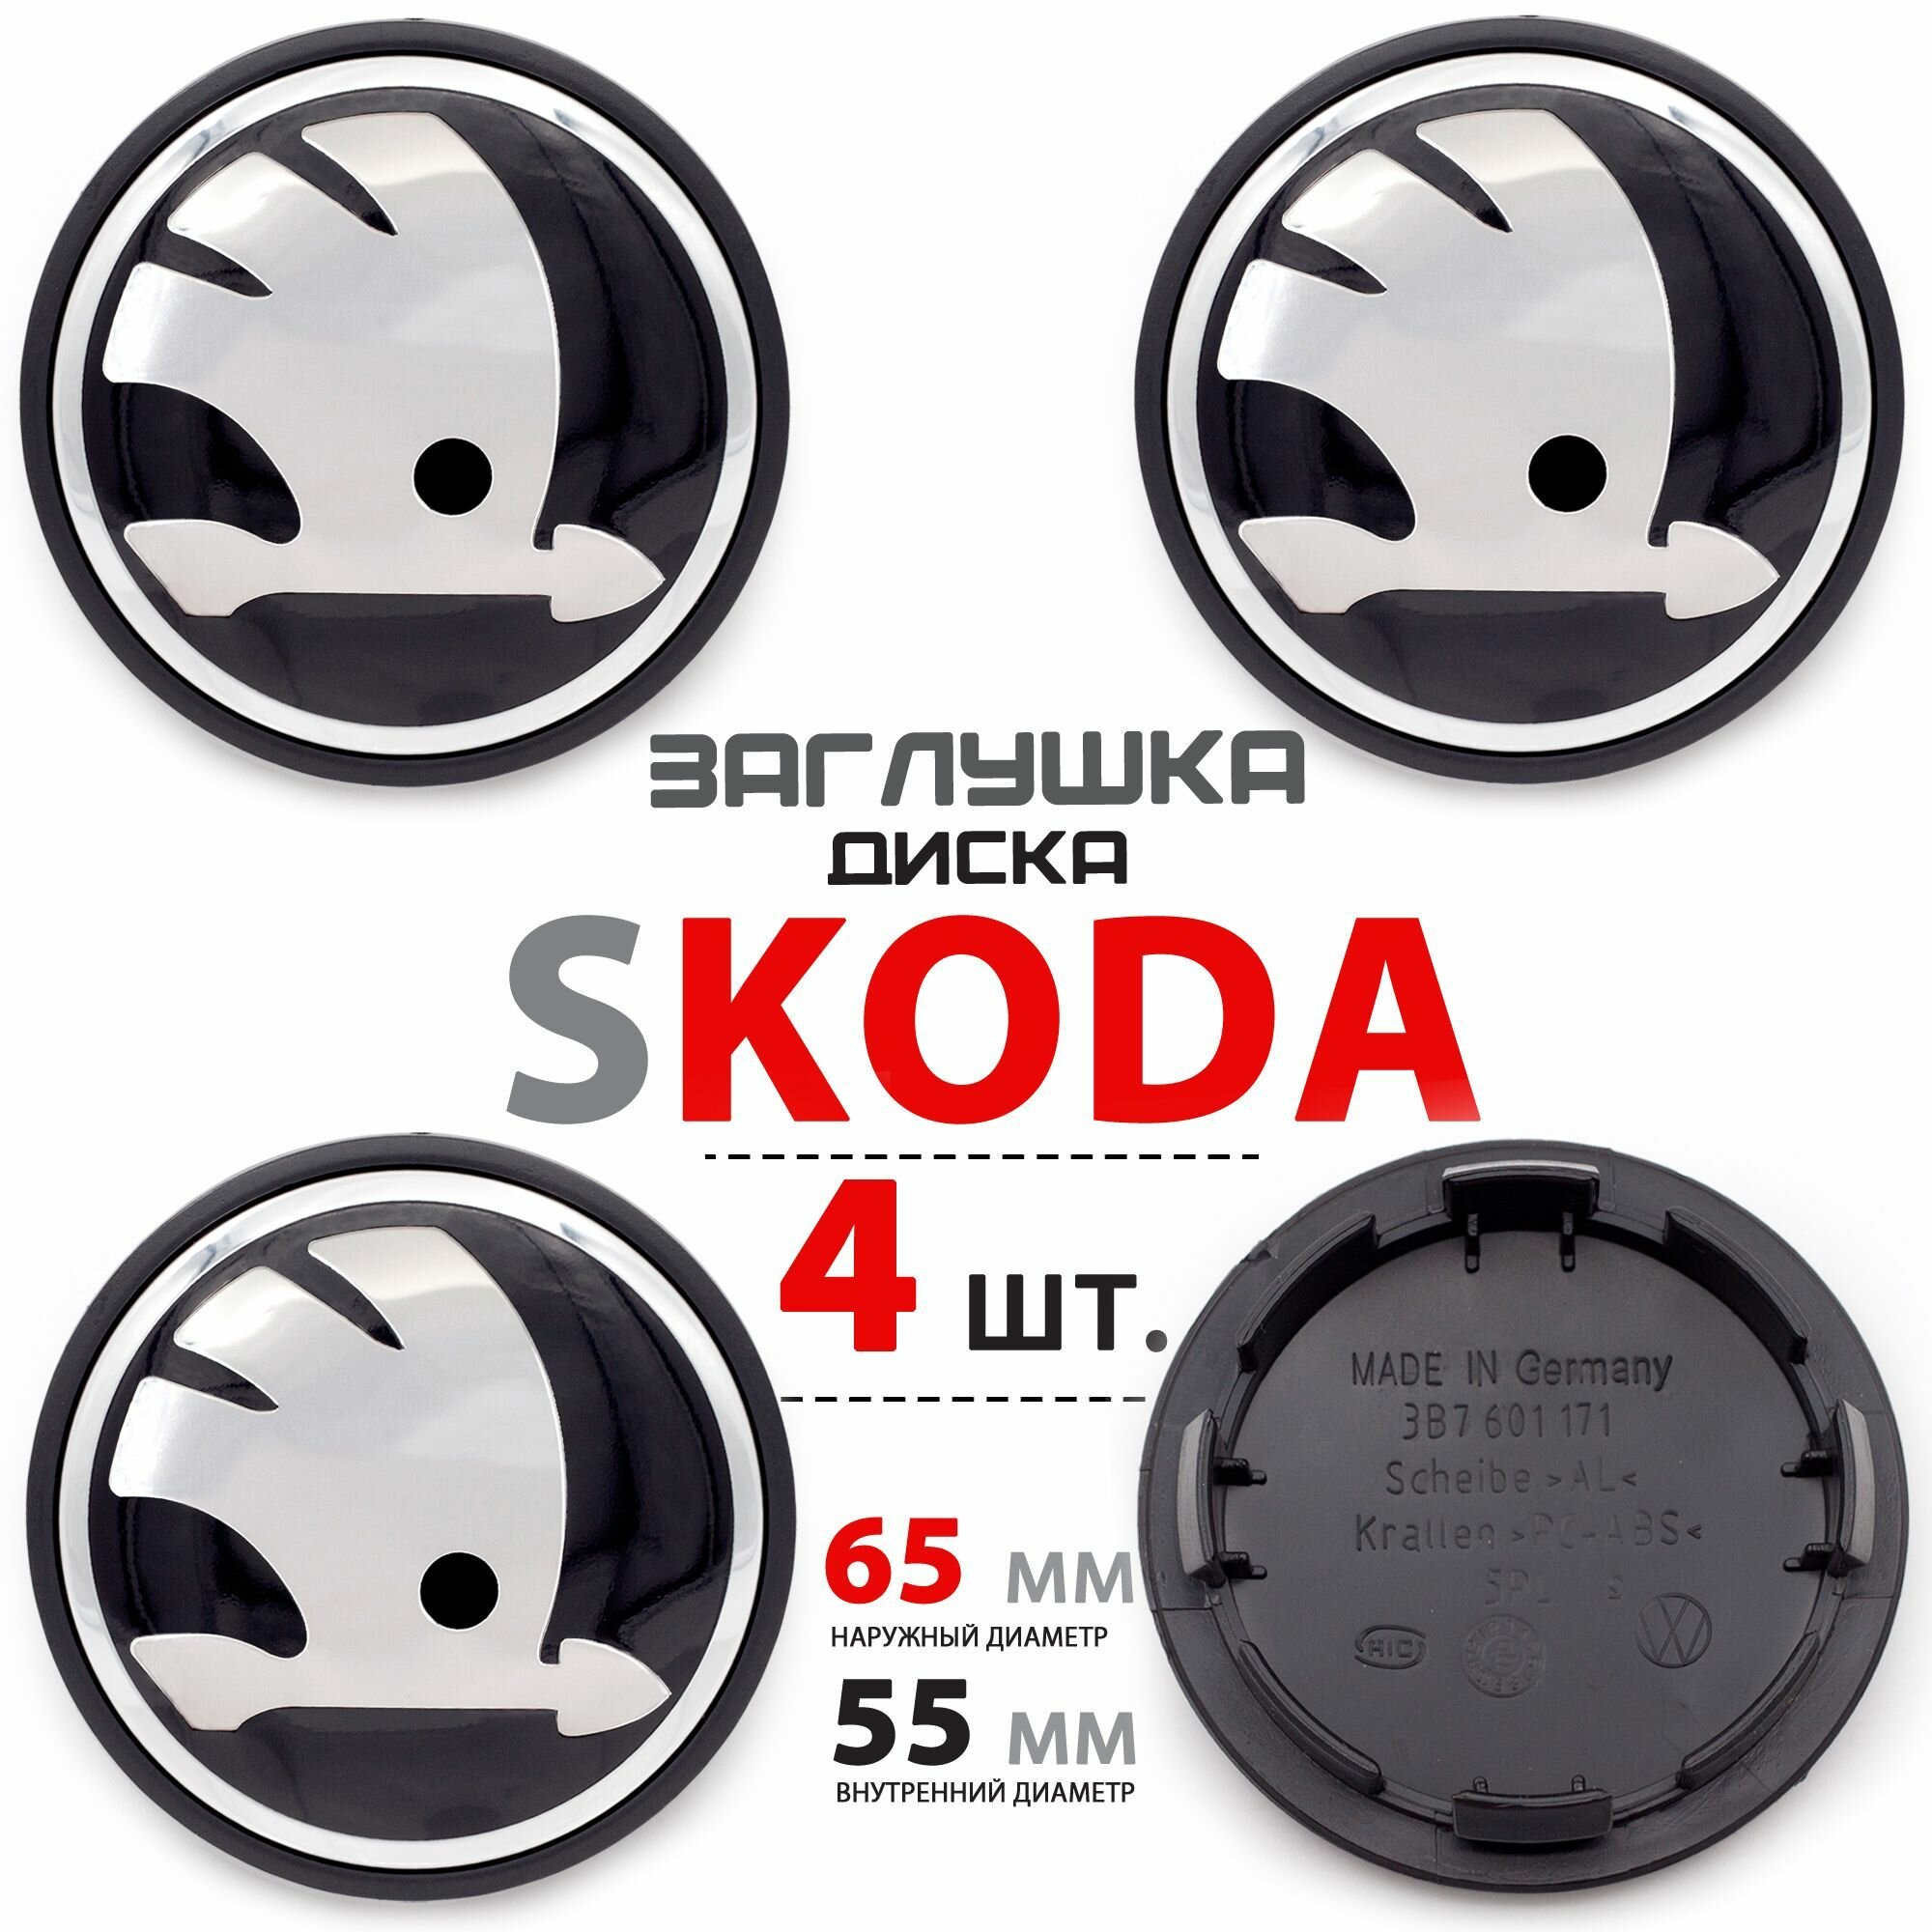 Колпачки, заглушки на литой диск колеса для Skoda / Шкода 65 мм 3B7601171 - комплект 4 штуки, черный